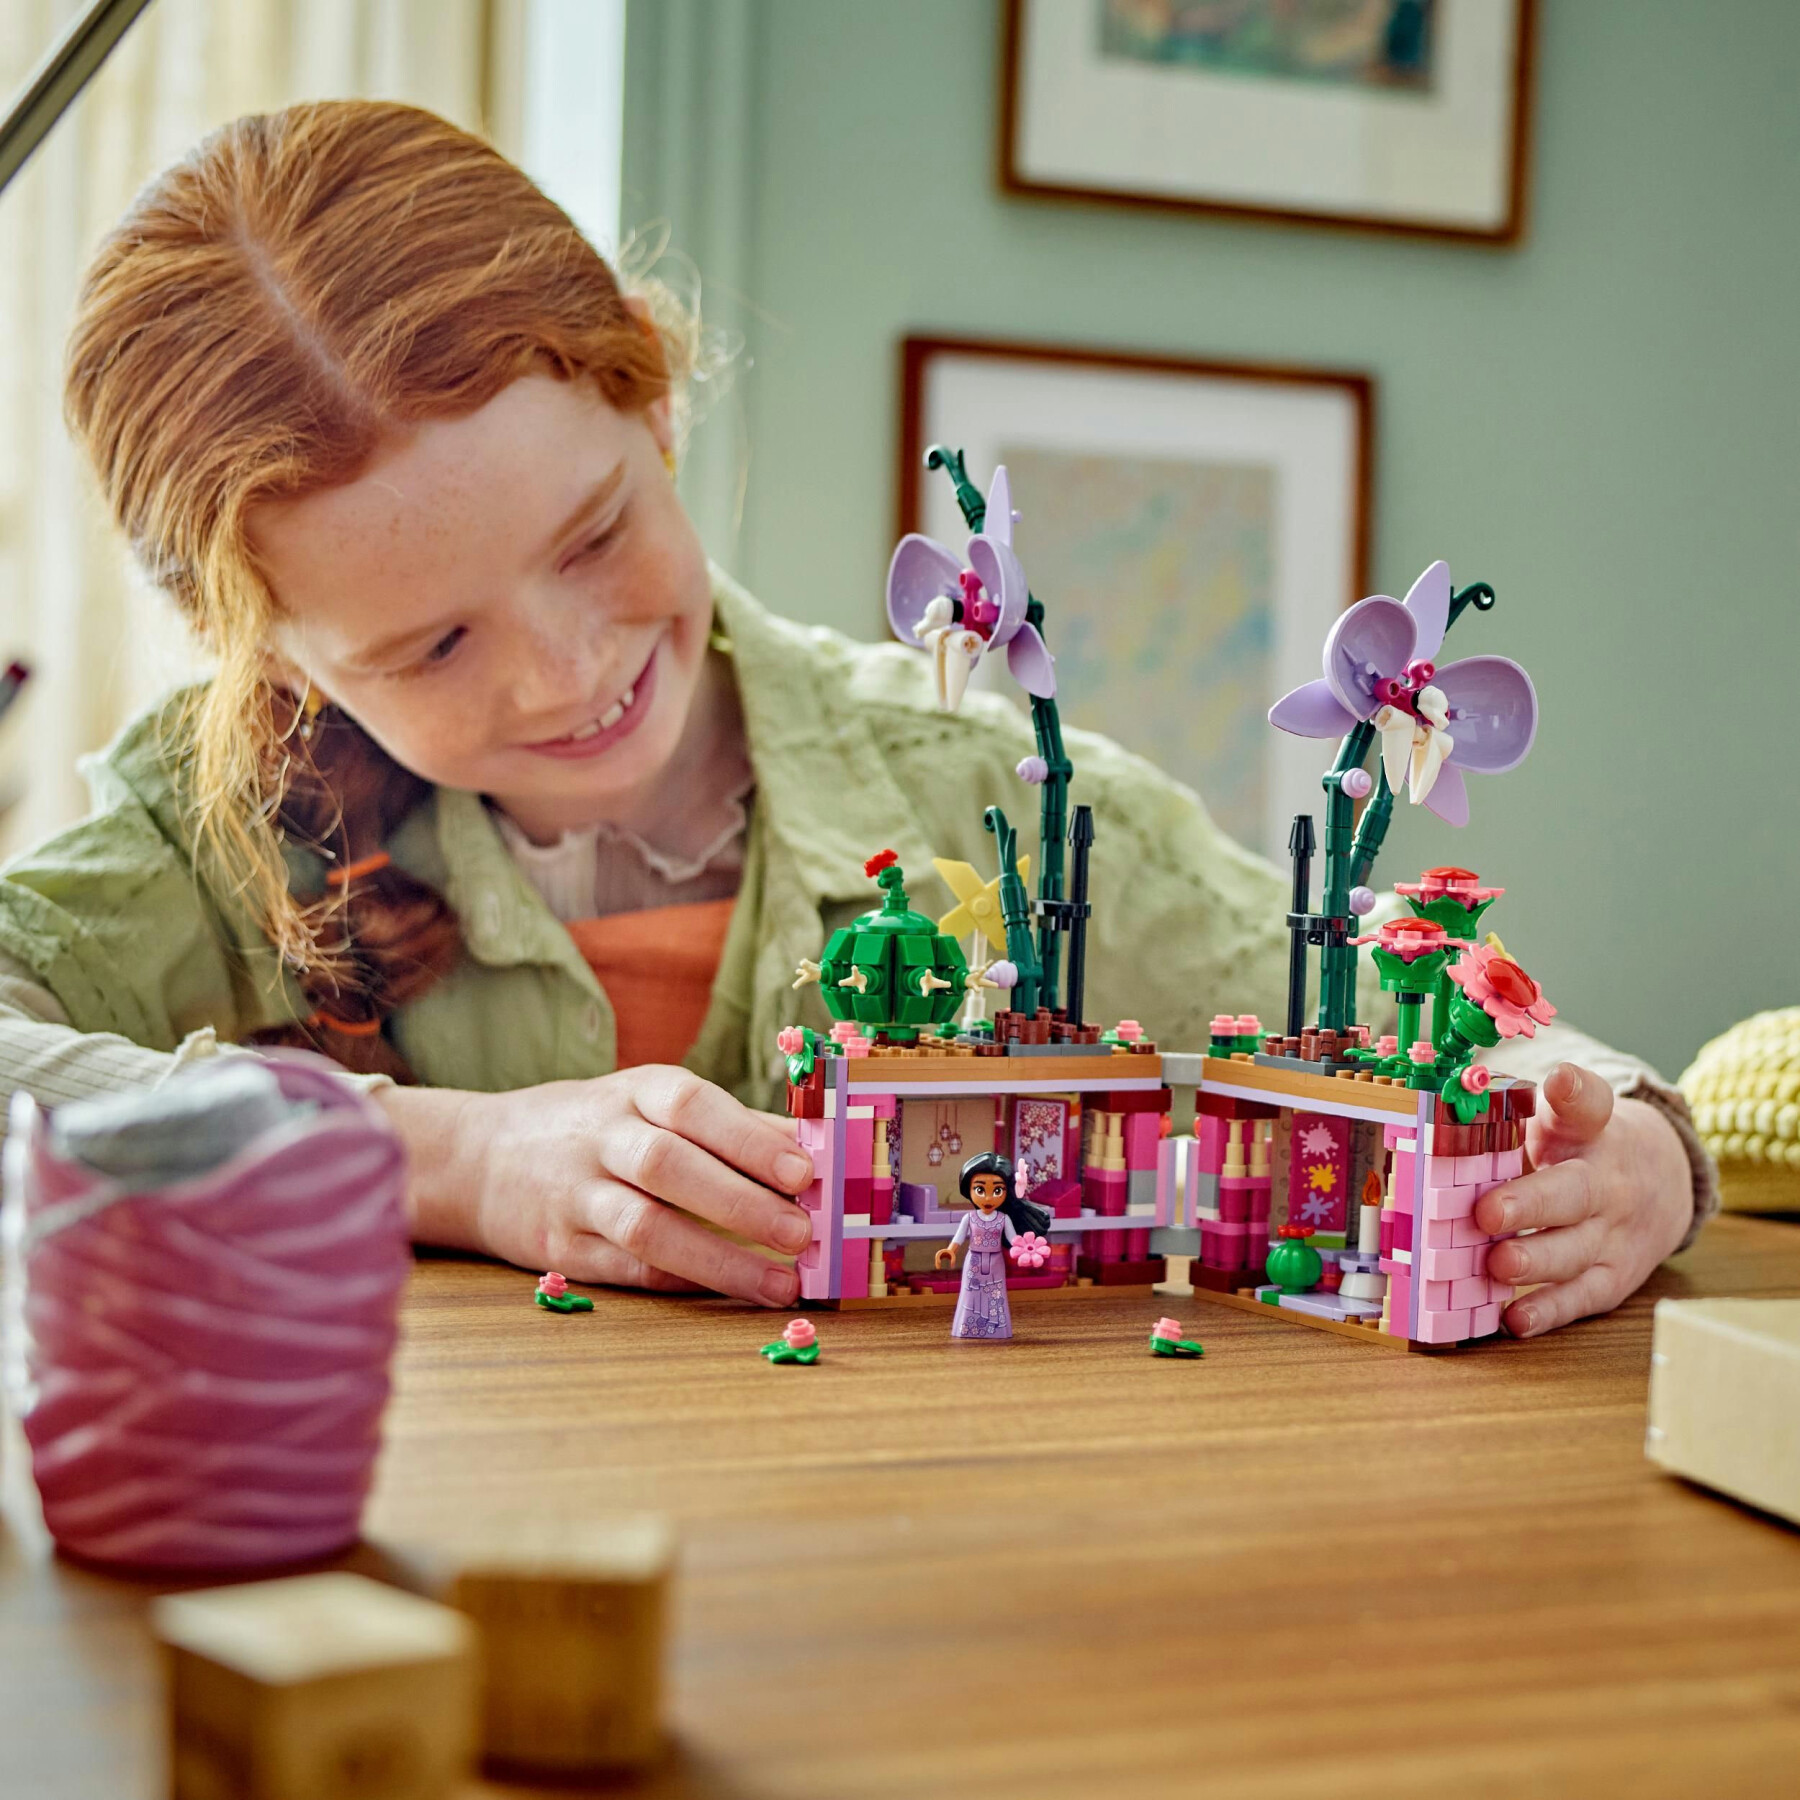 Lego disney 43237 vaso di fiori di isabela, giochi per bambini 9+ con mini bambolina e cesto apribile, regalo dal film encanto - DISNEY PRINCESS, LEGO DISNEY PRINCESS